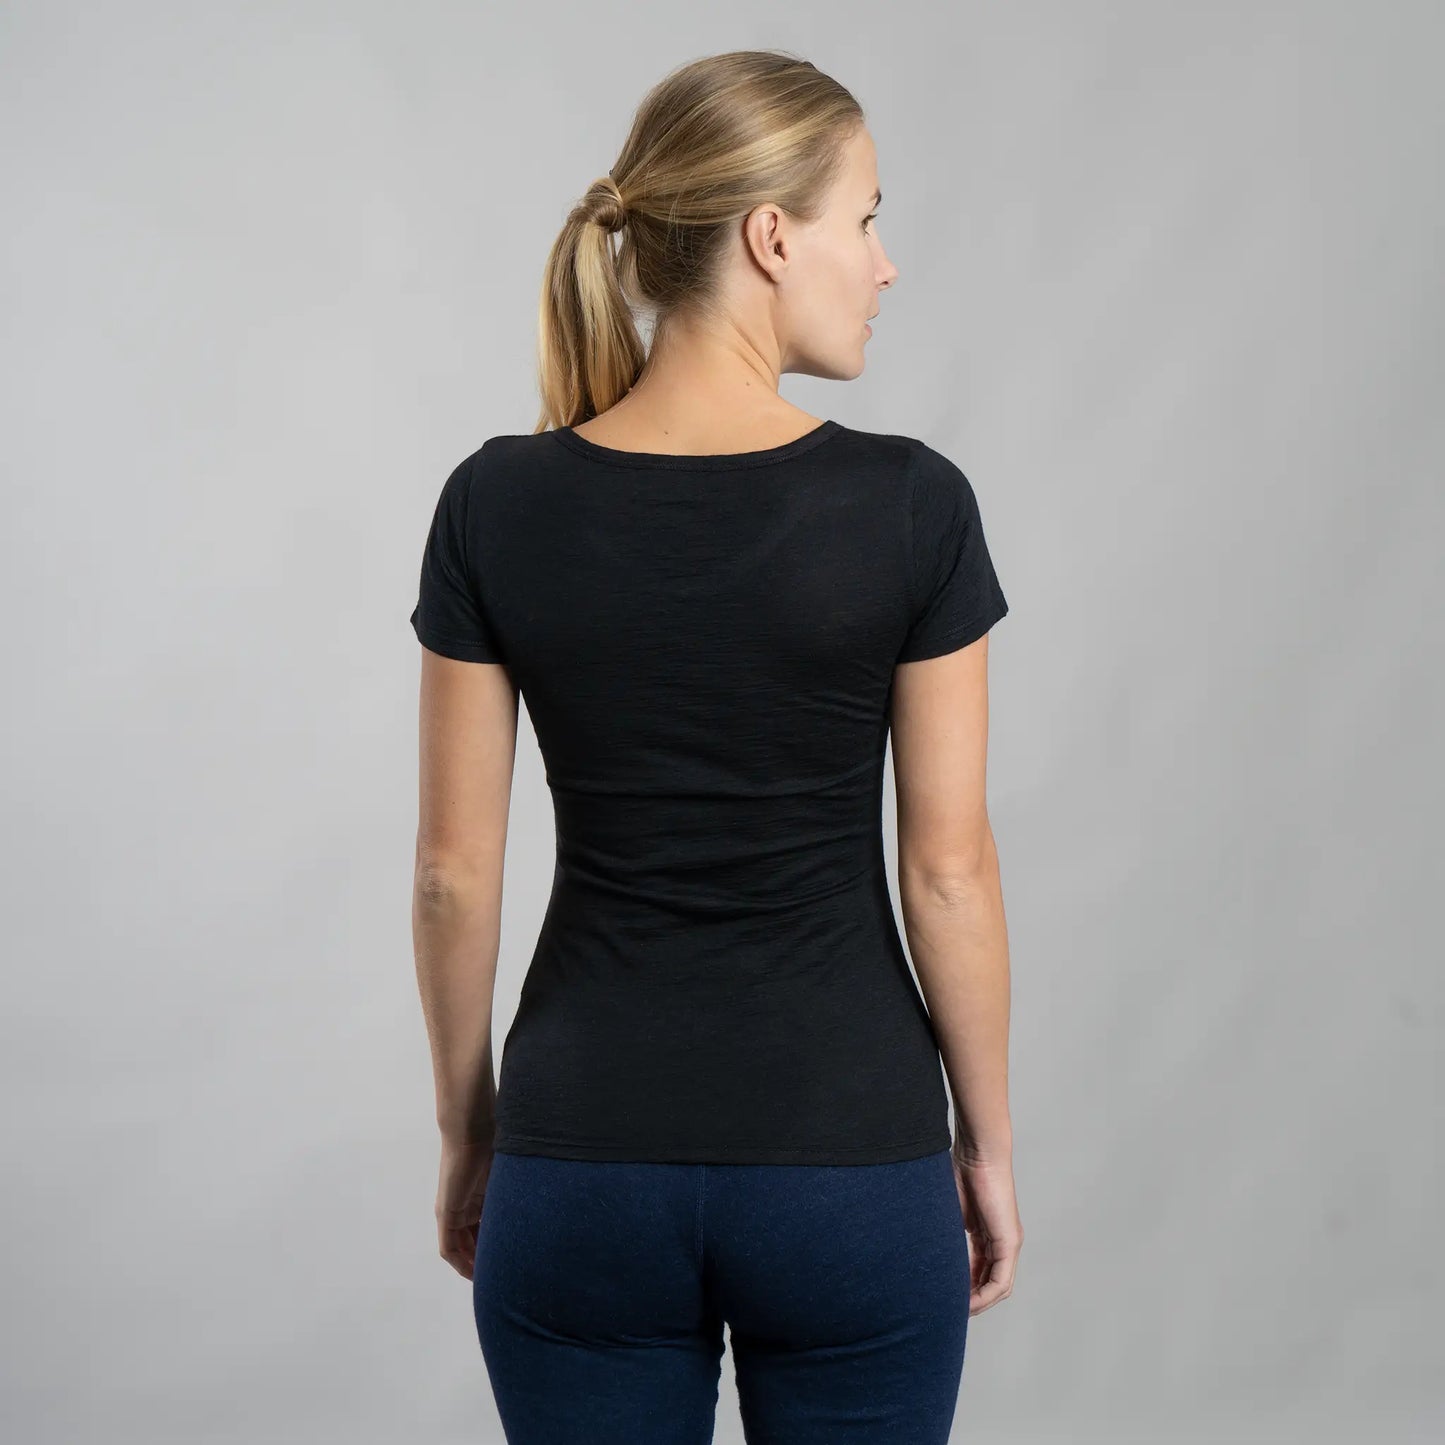  womens ecological vneck tshirt color black